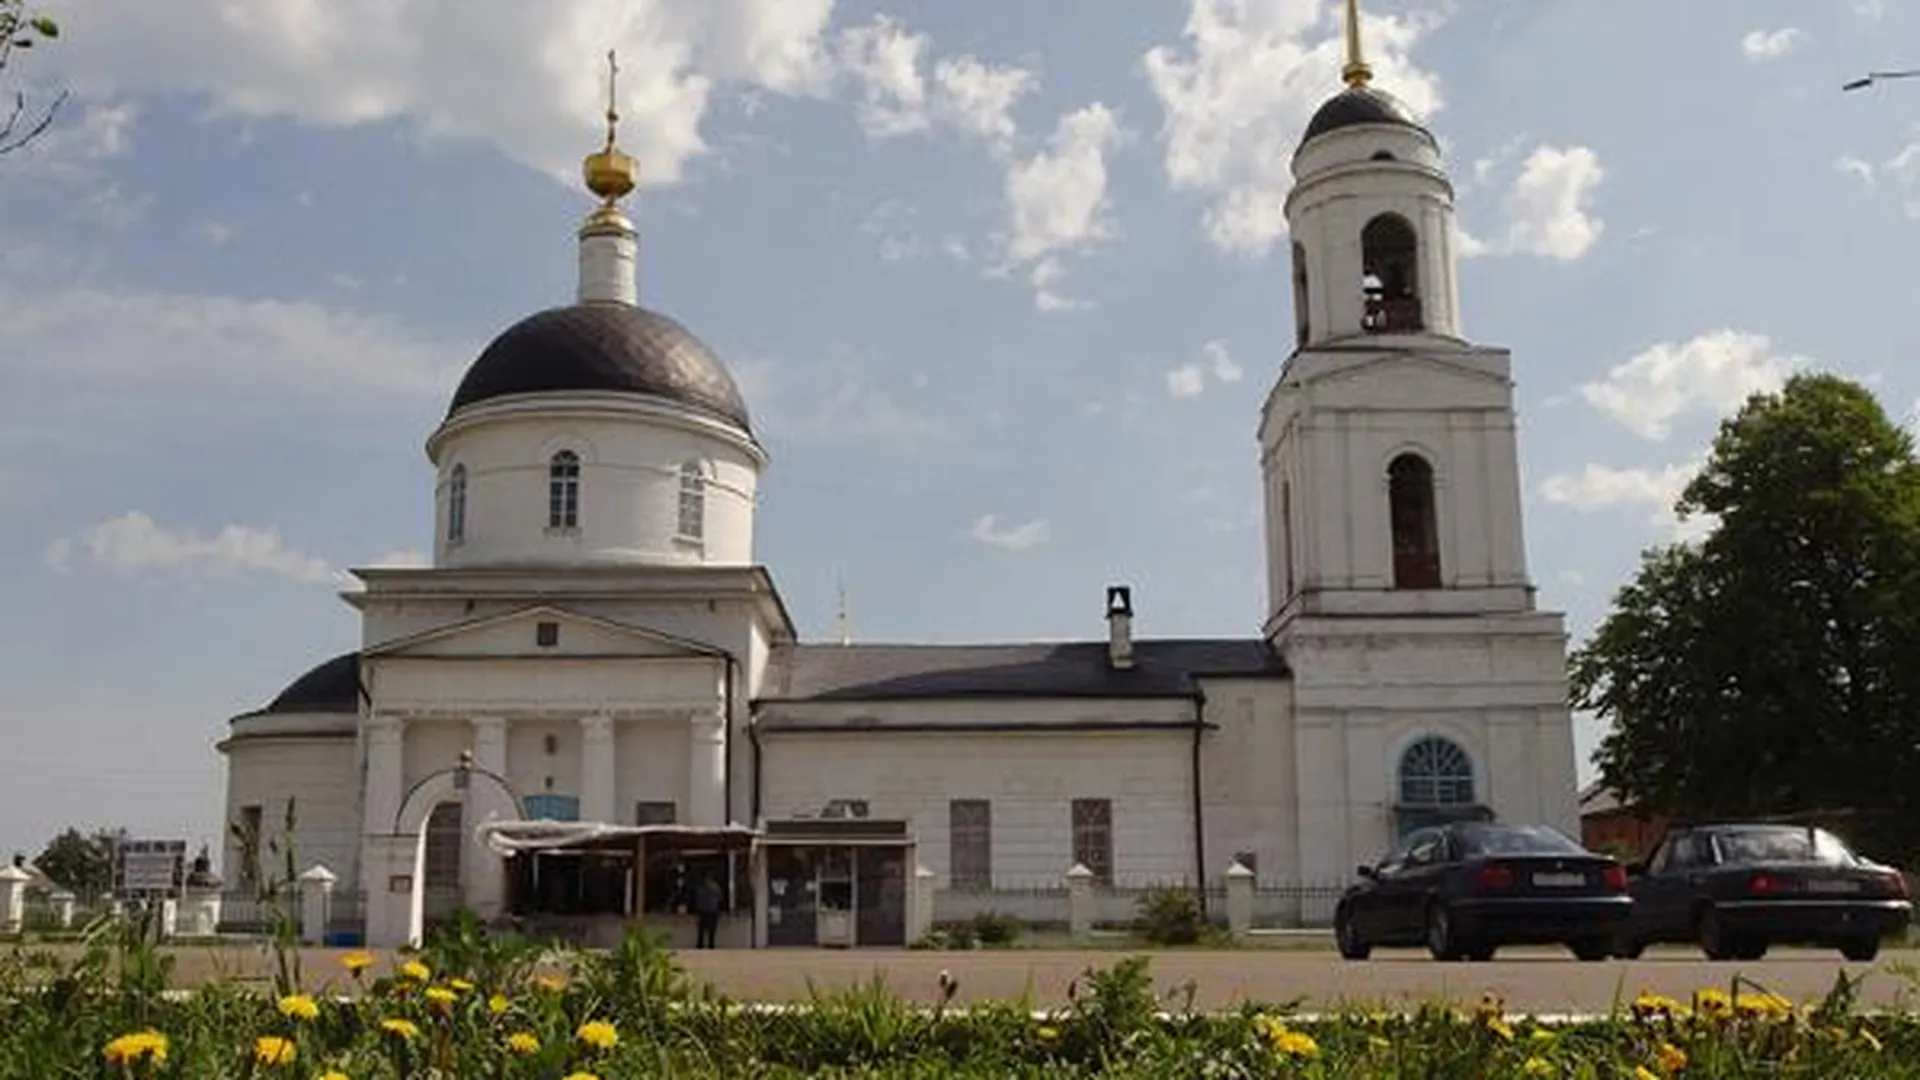 Дачная застройка угрожает памятнику истории в Сергиево-Посадском районе